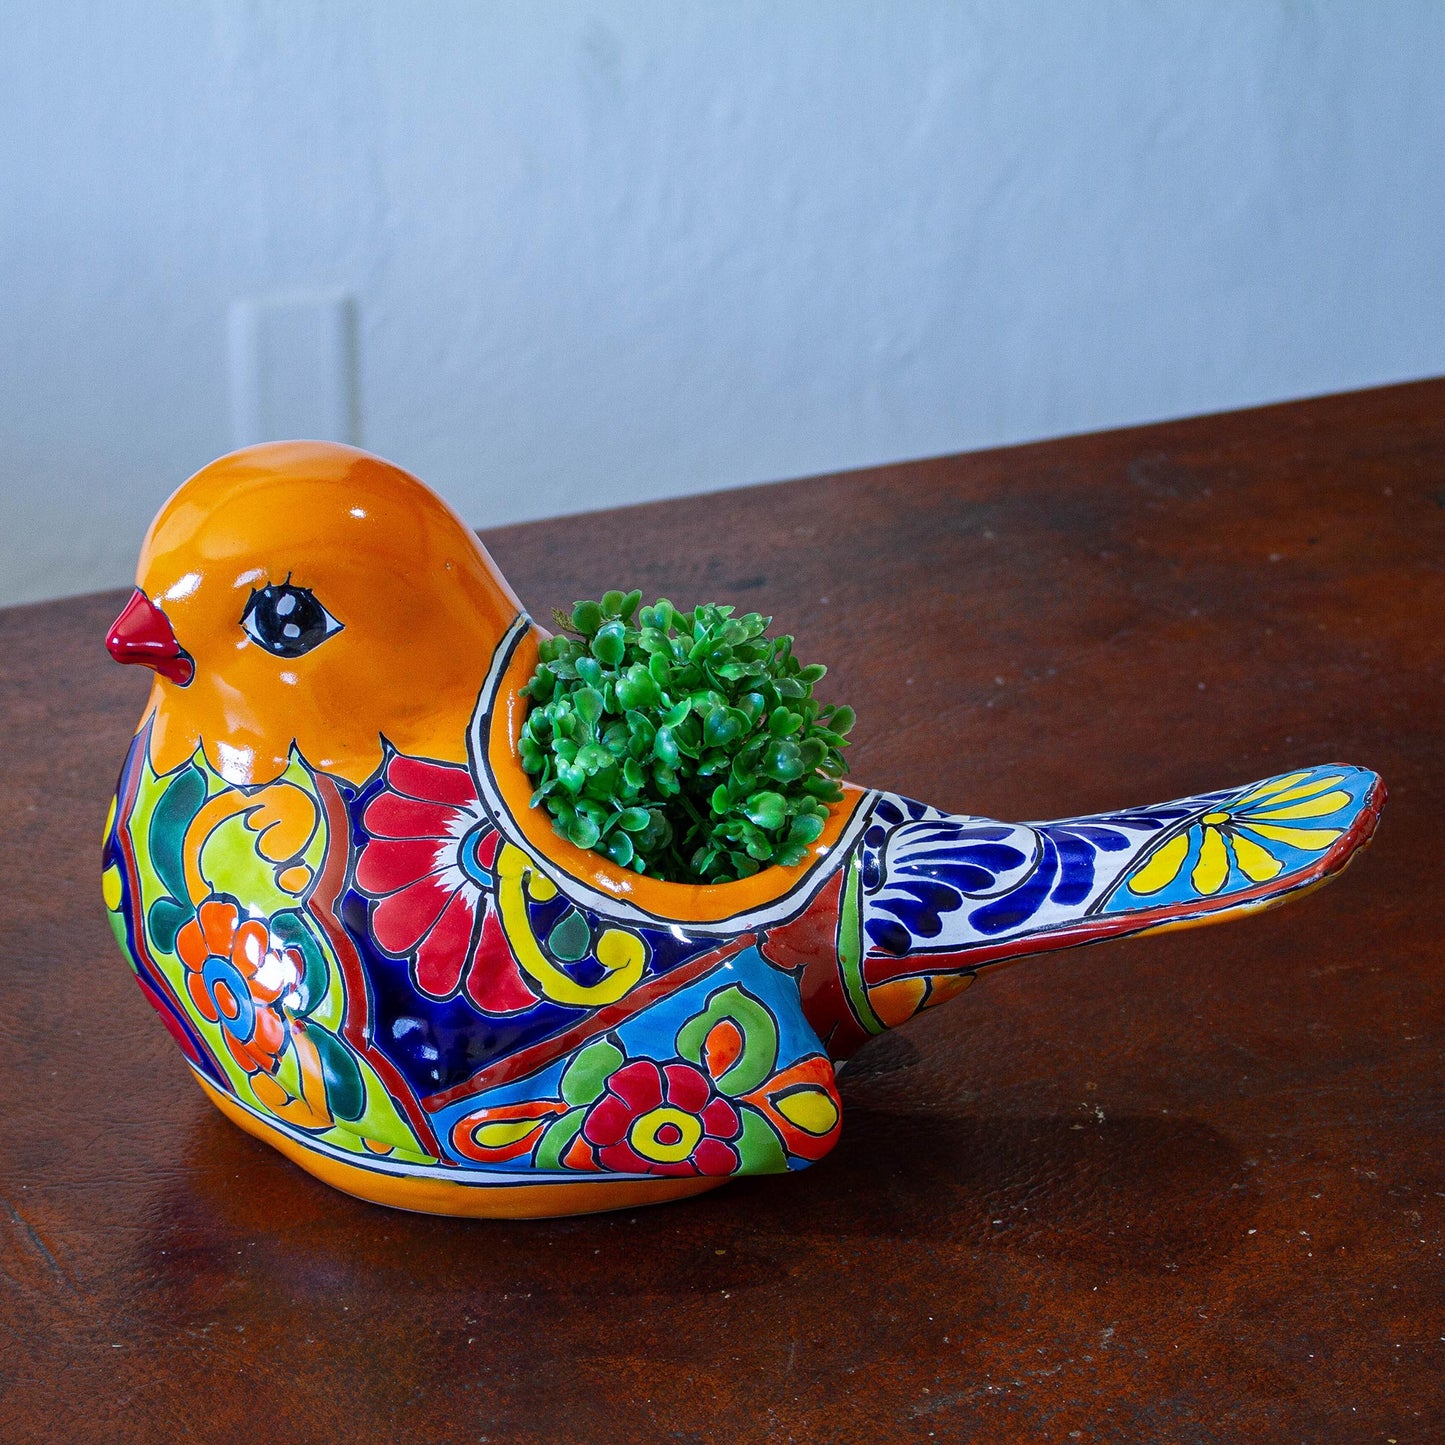 Colorful Dove Talavera-Style Ceramic Dove Planter from Mexico